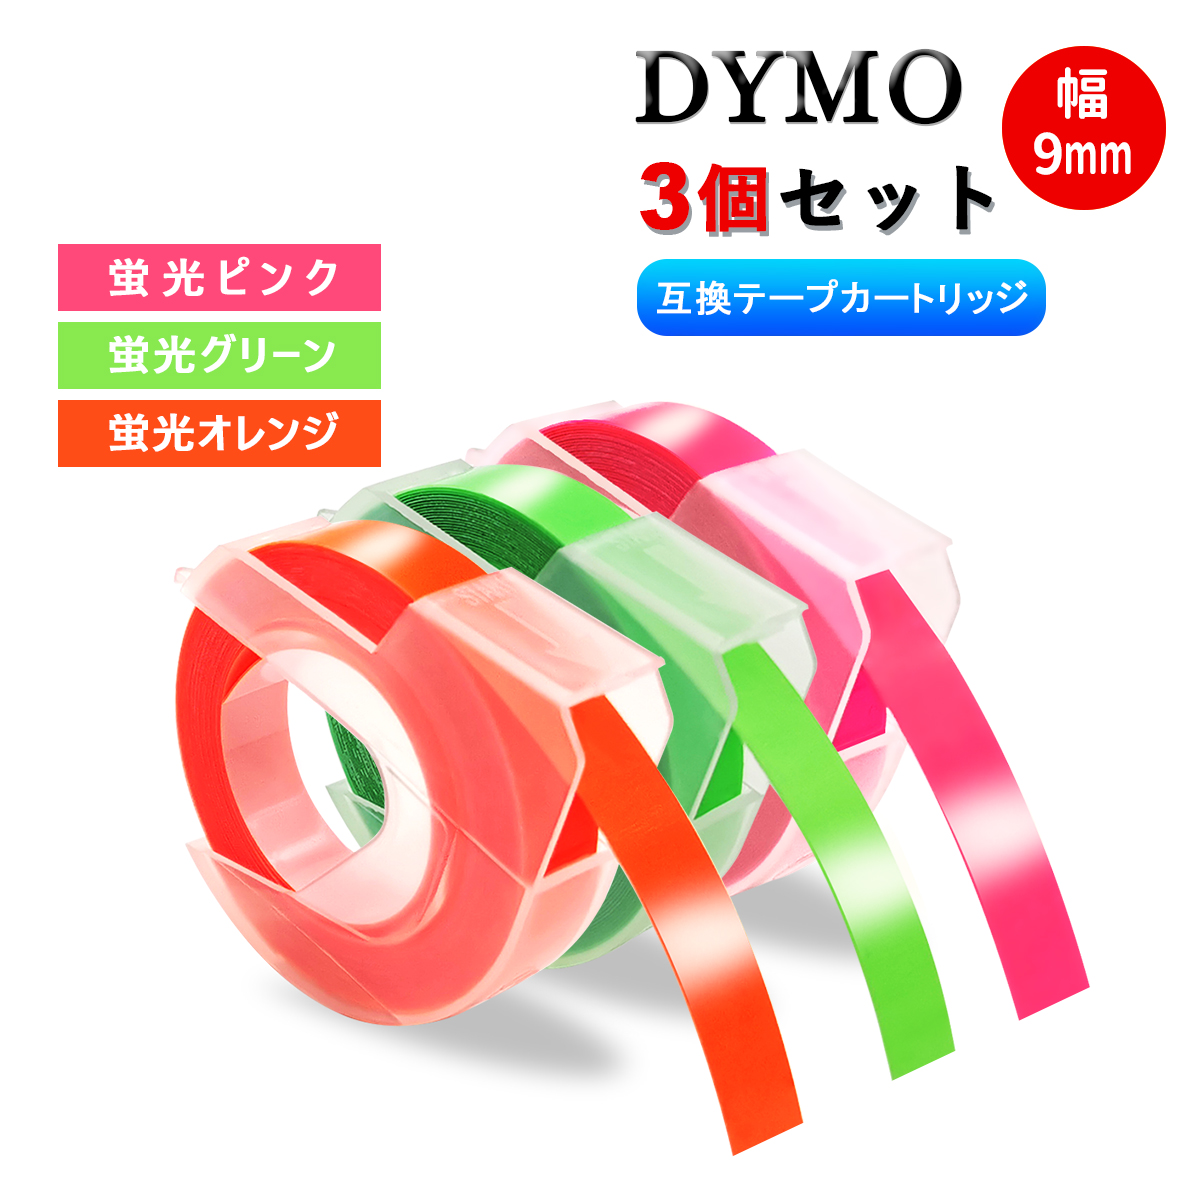 値下げしました☆テープ5本付き☆ダイモ DYMO テープライター M-1540